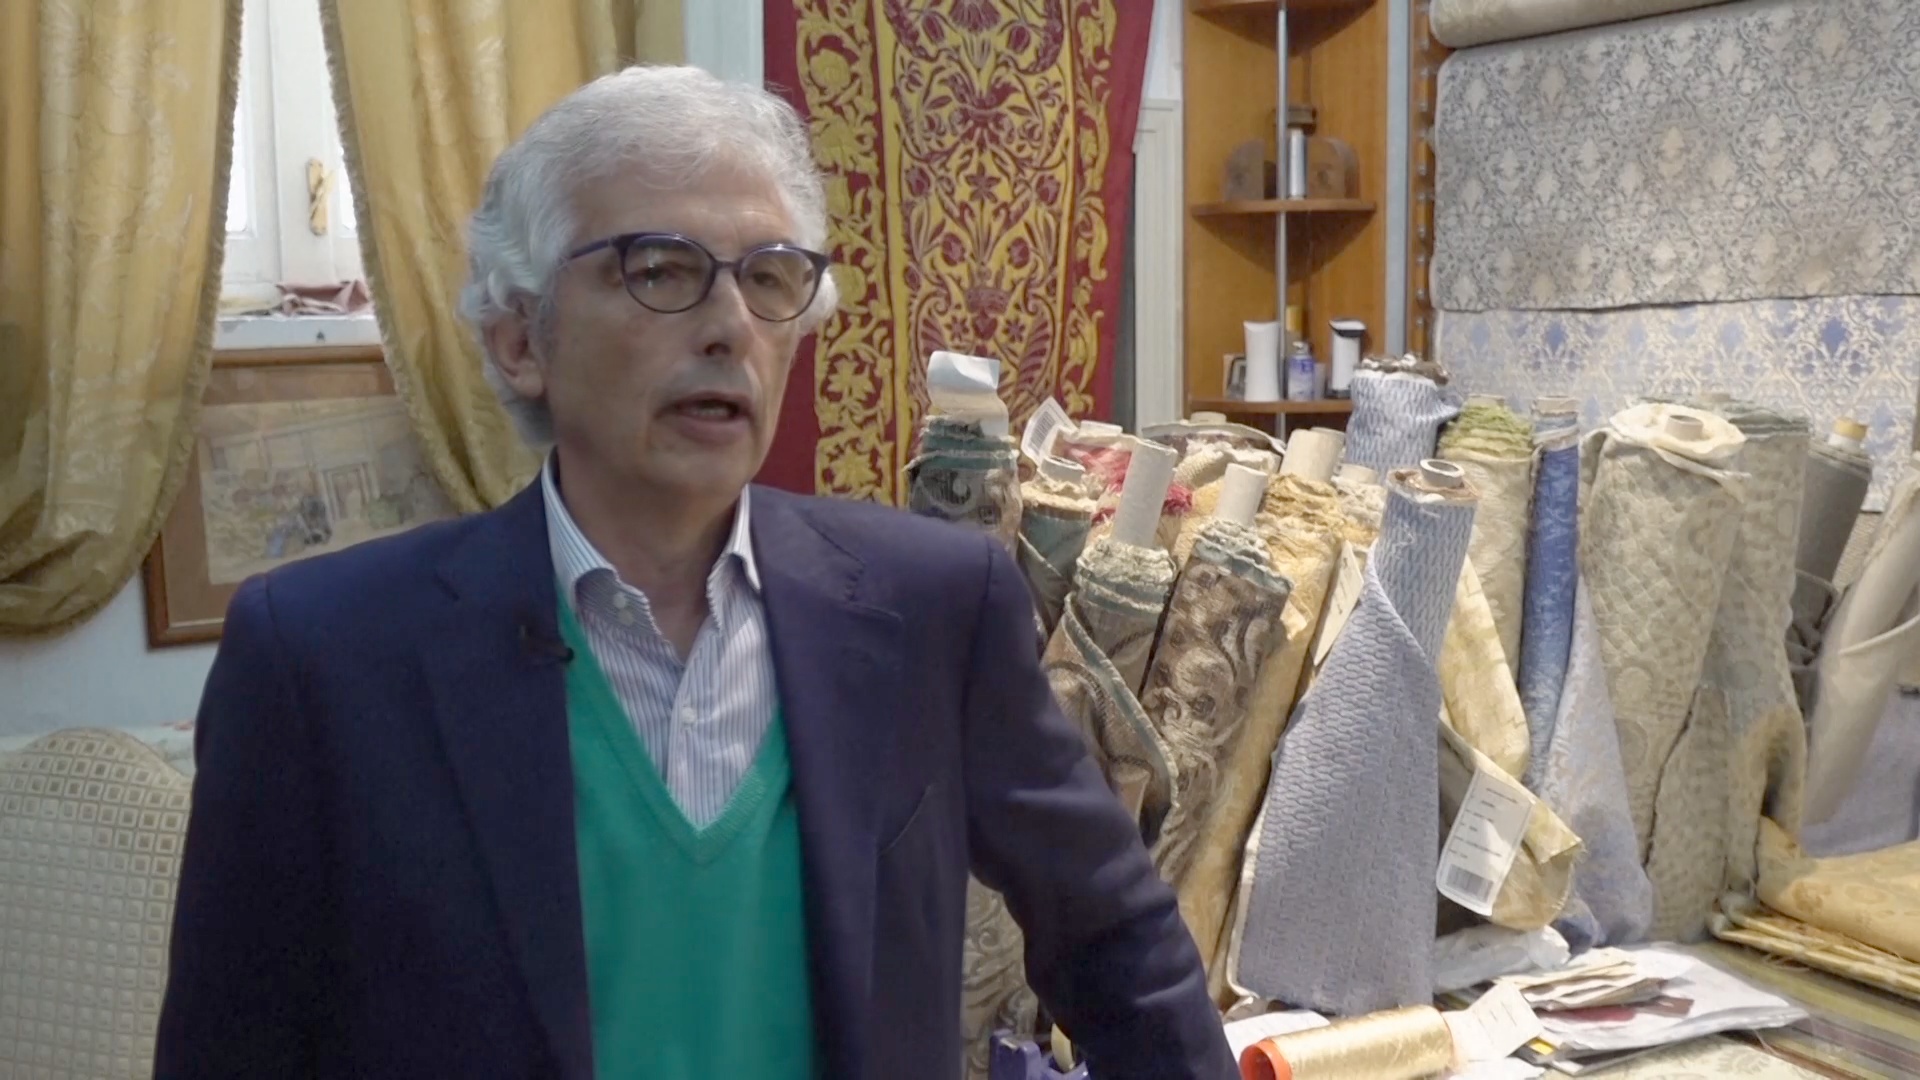 Итальянские шёлкоткачи выполняют заказы для дворцов и резиденций по всему миру